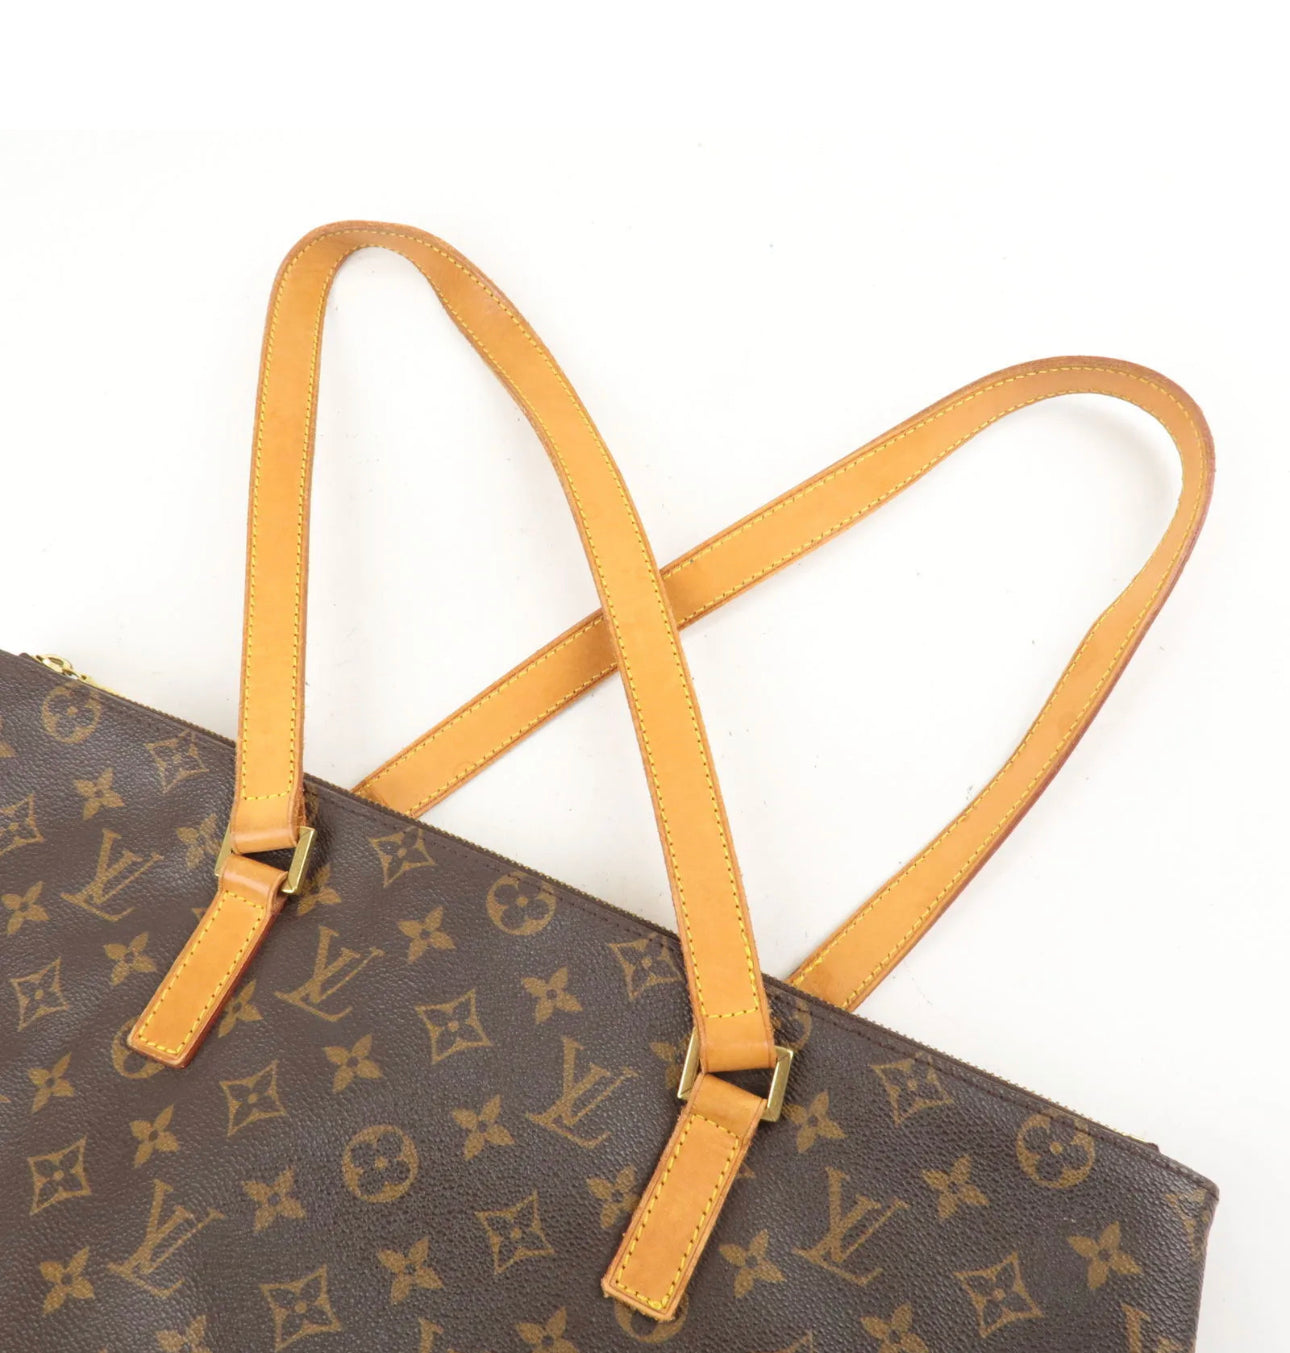 LOUIS VUITTON Louis Vuitton Luco monogram tote bag shoulder M51155